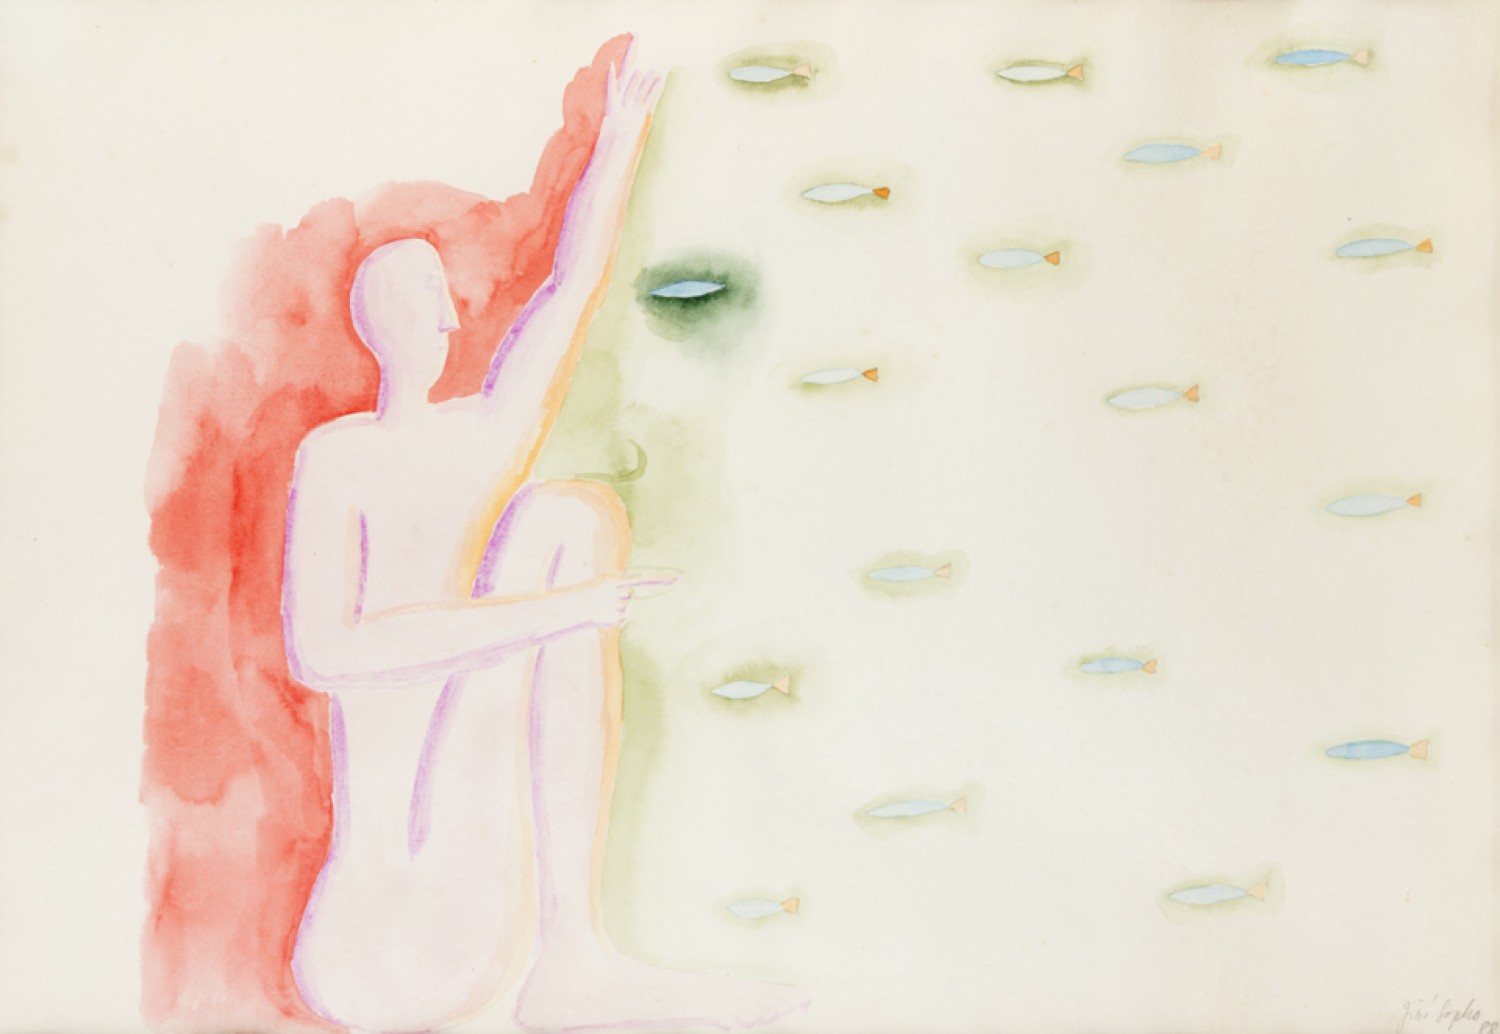 Jiří Sopko: Ryby, 1988, akvarel na ručním papíře, 40 × 67 cm, Aukční dům Sýpka 19. 6. 2022 cena: 90 000 Kč